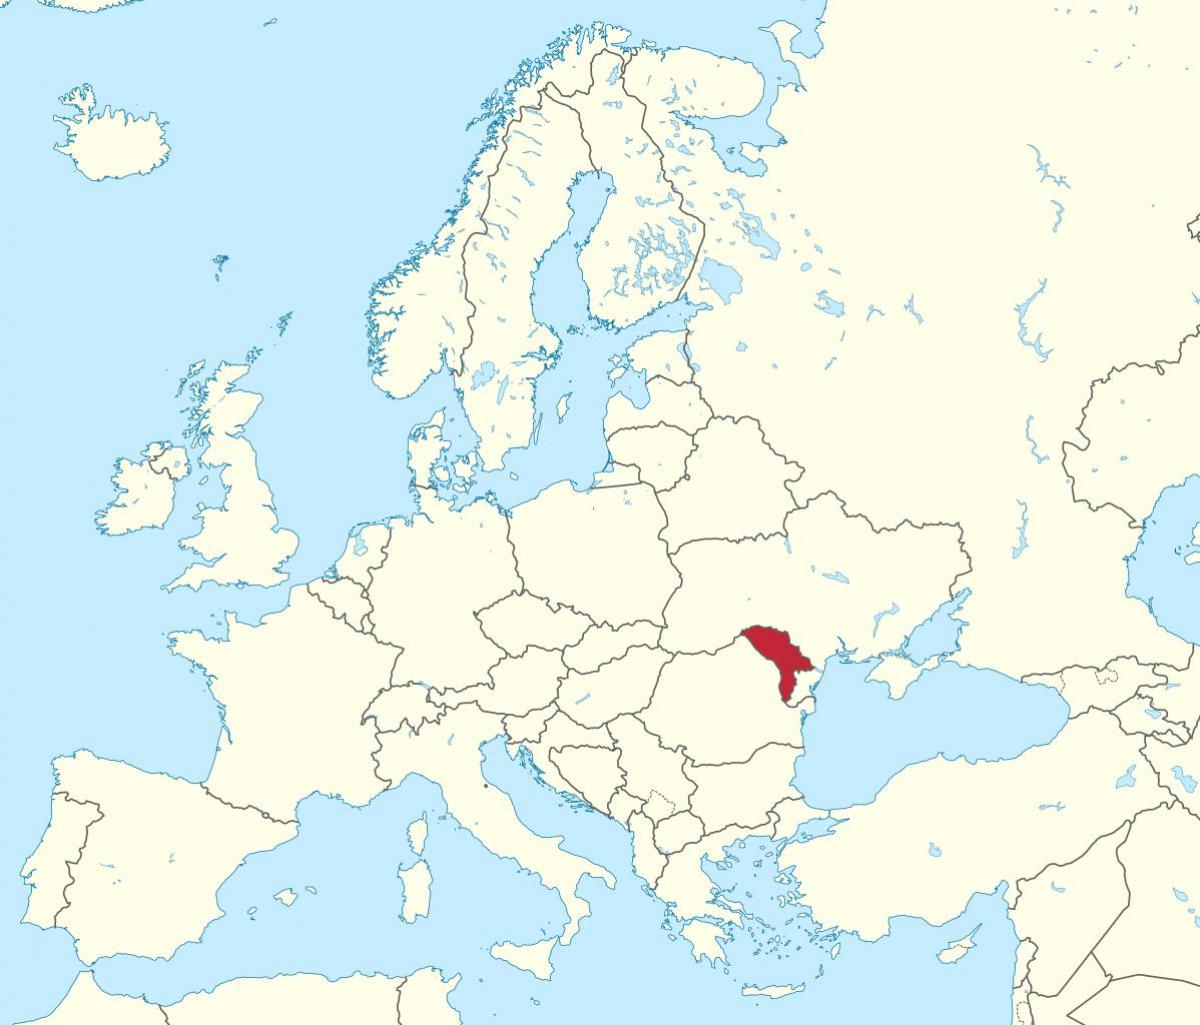 แผนที่ของมอลโดวา name ยุโรป